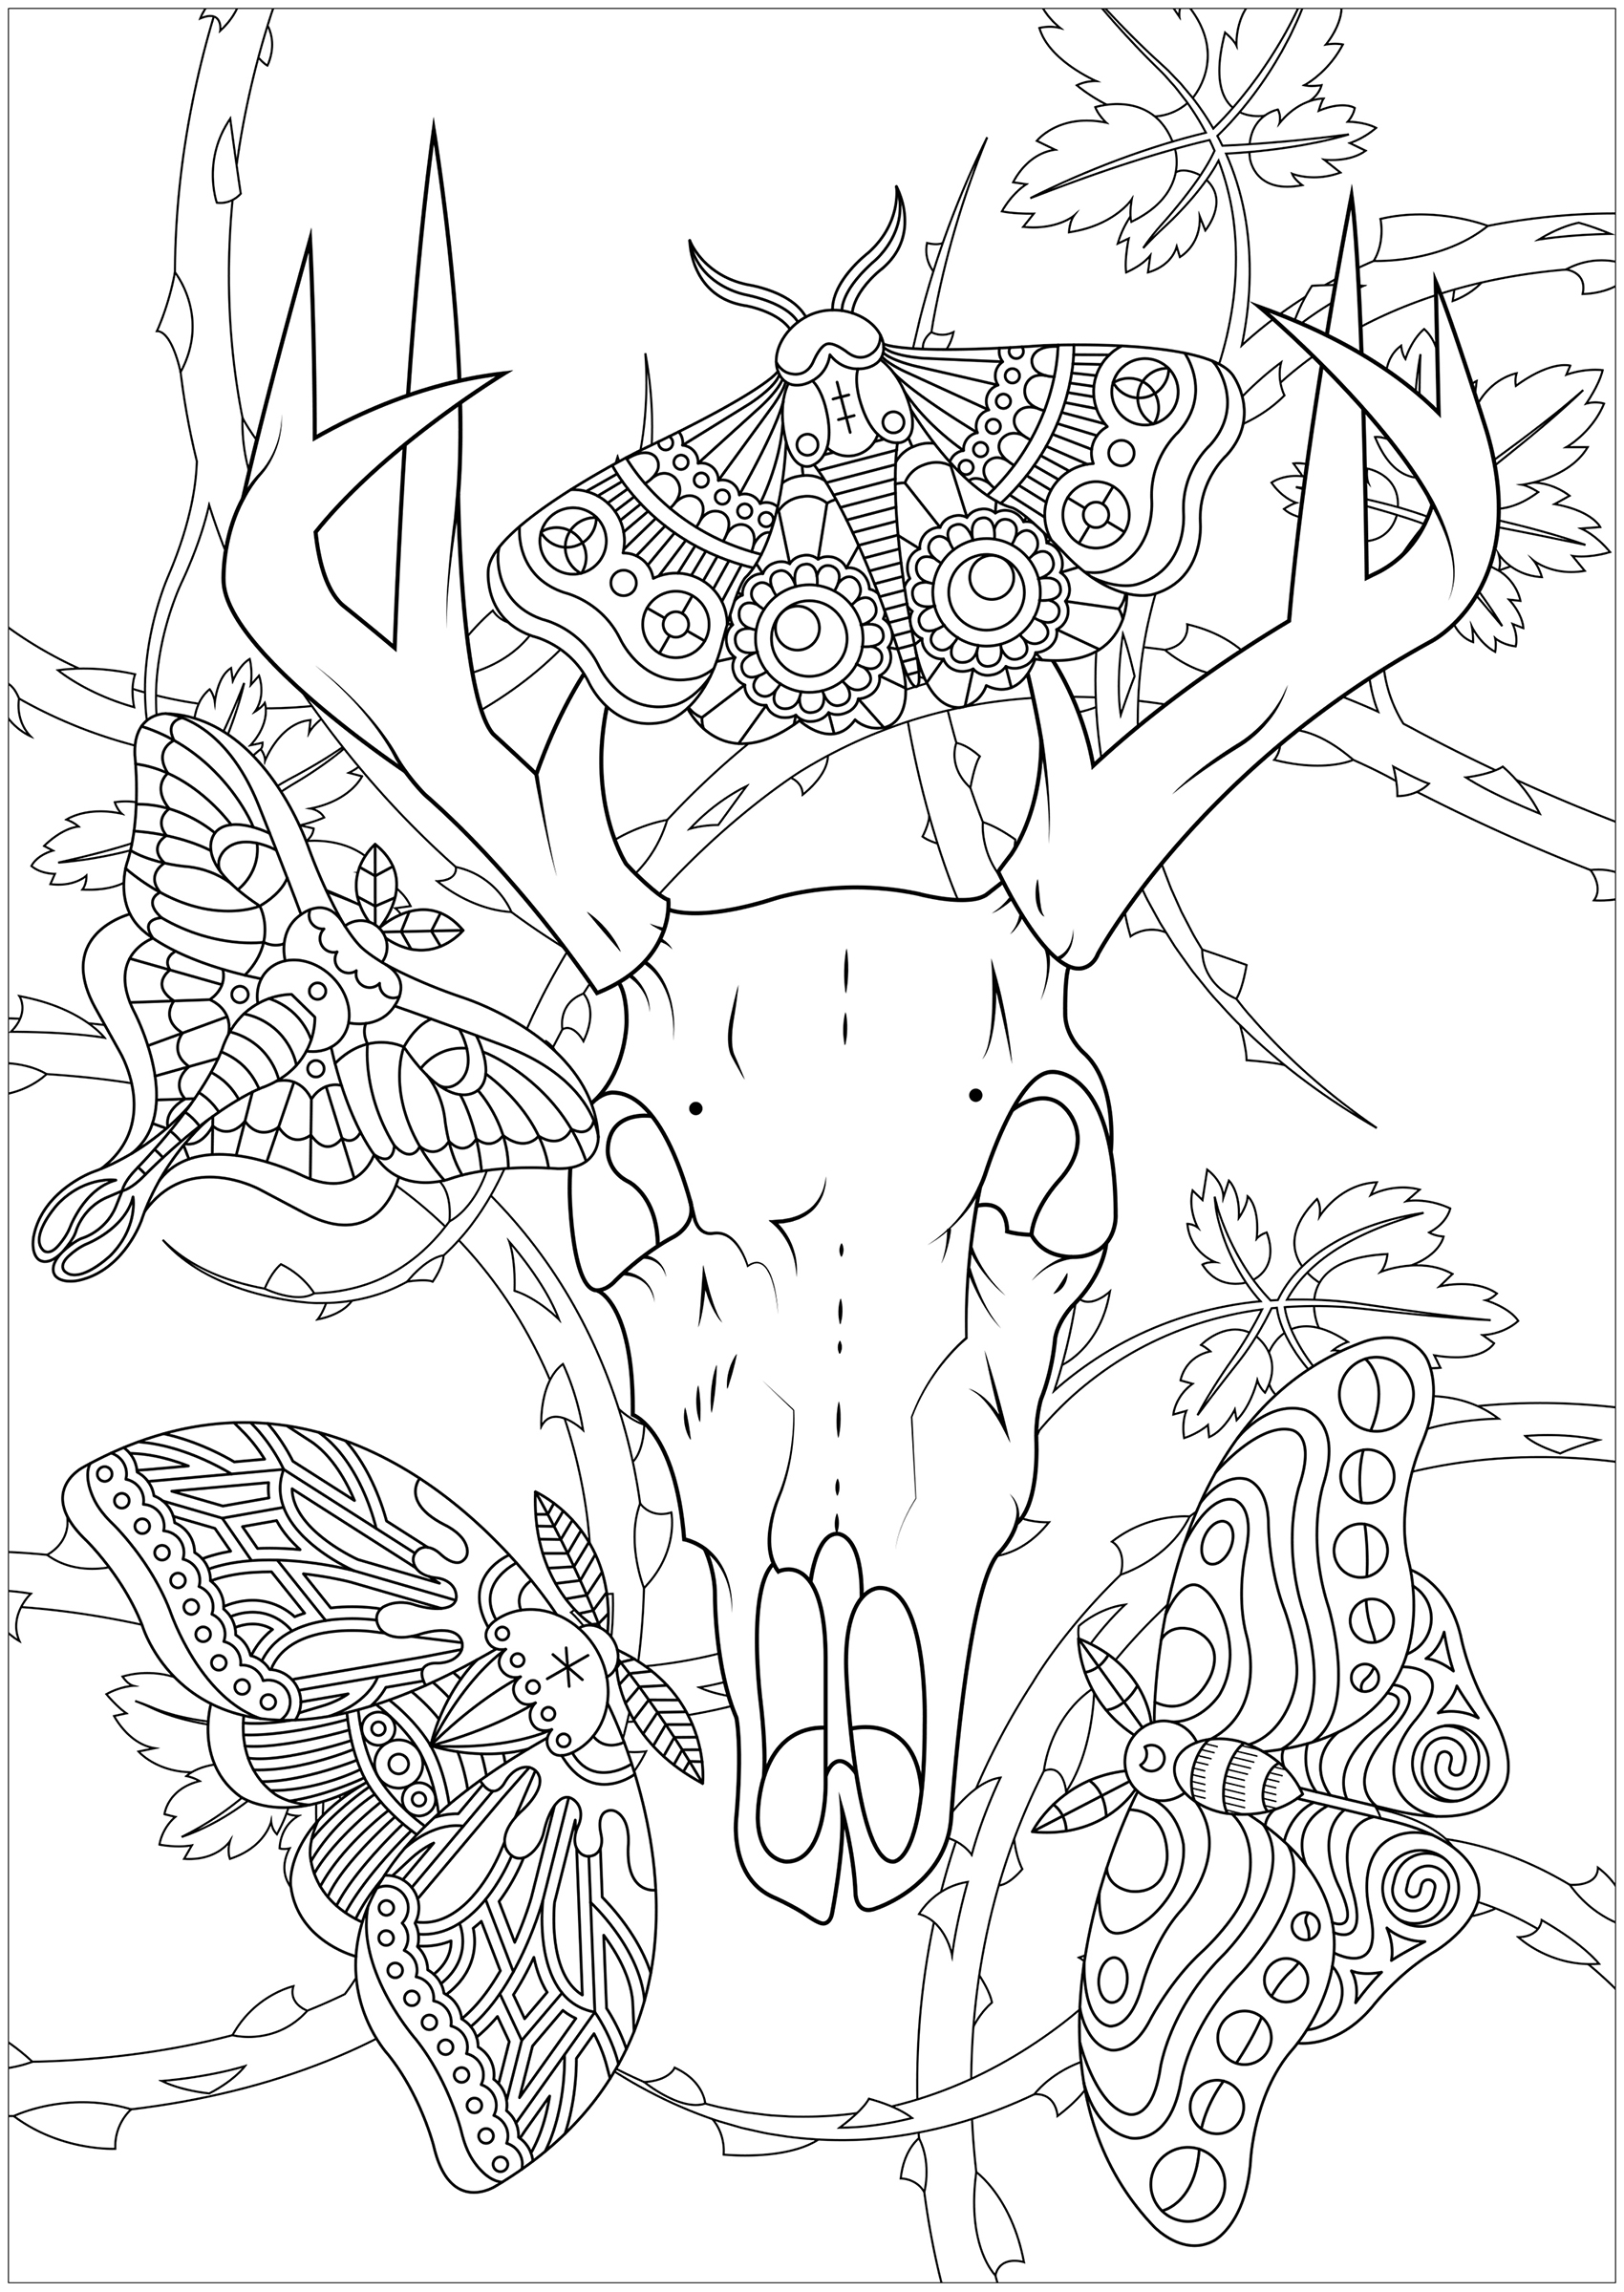 Cuatro polillas y un cráneo de ciervo, con zarzas al fondo ... Una página para colorear lúgubre e intrigante, Artista : Lucie